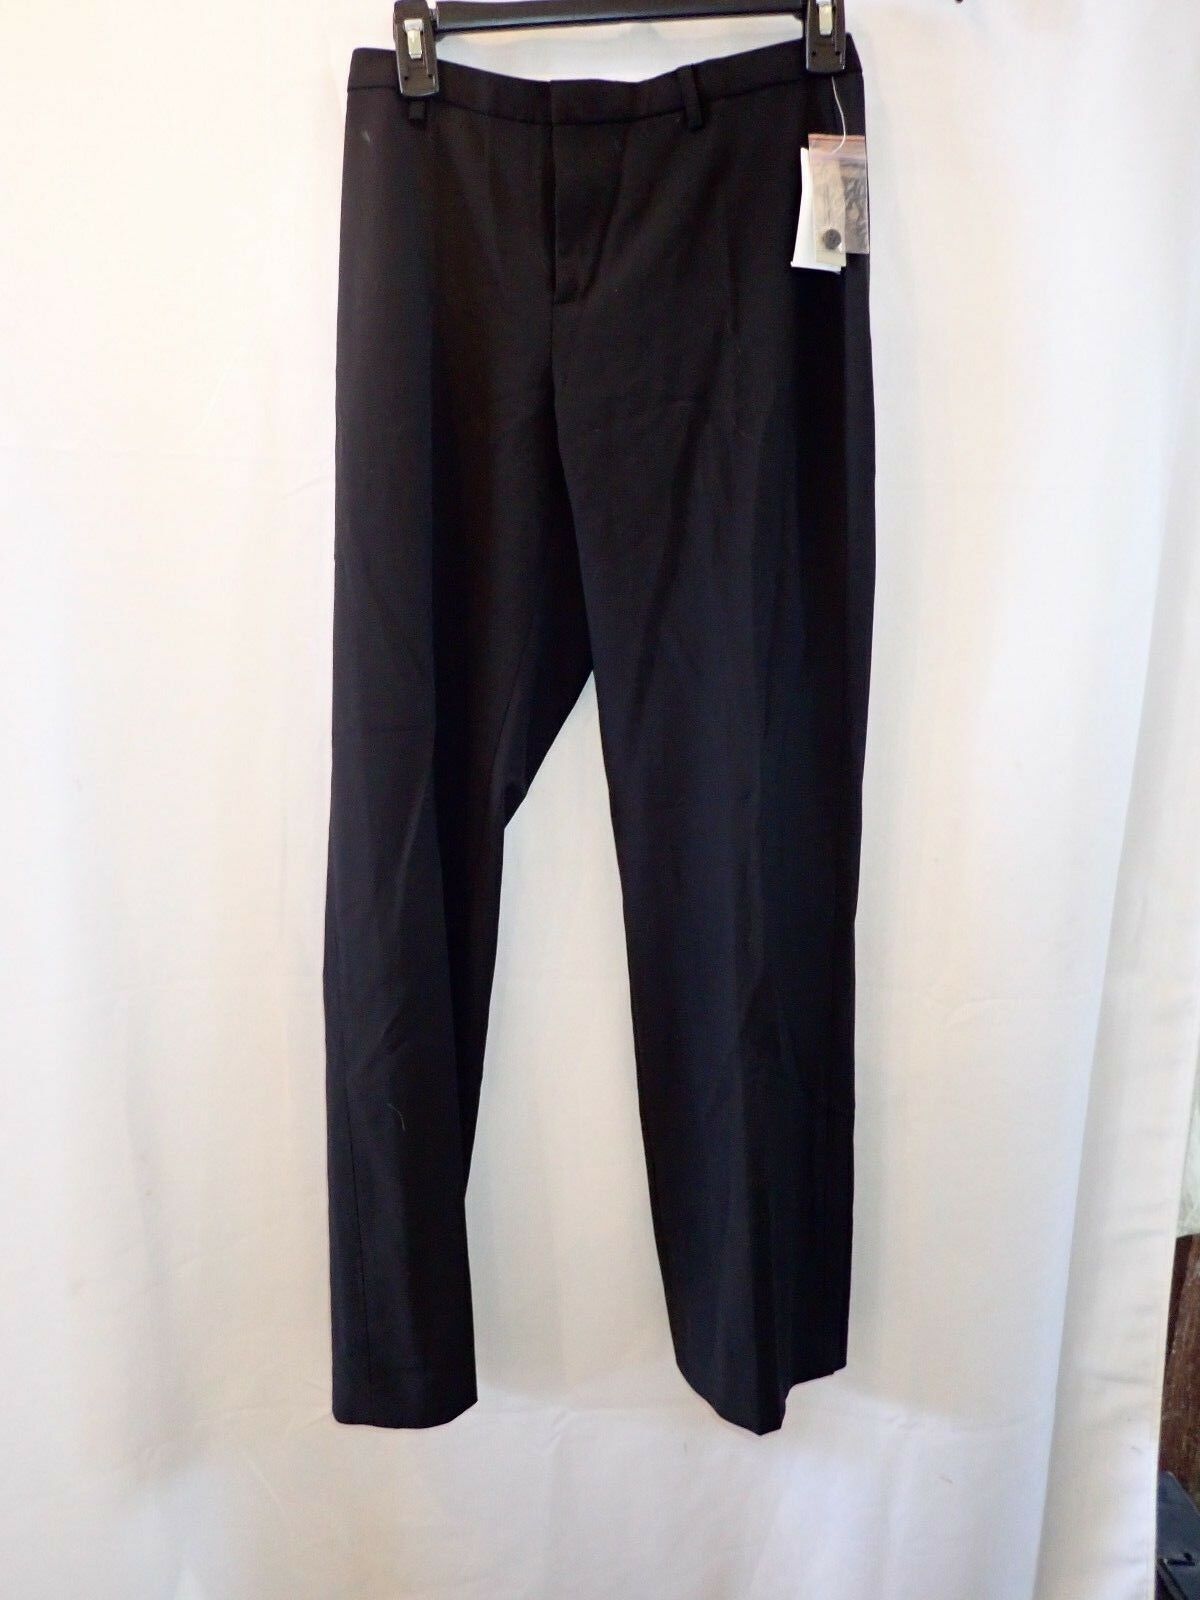 Gap women's dress pants black size 2 stretch (75A) - Pants